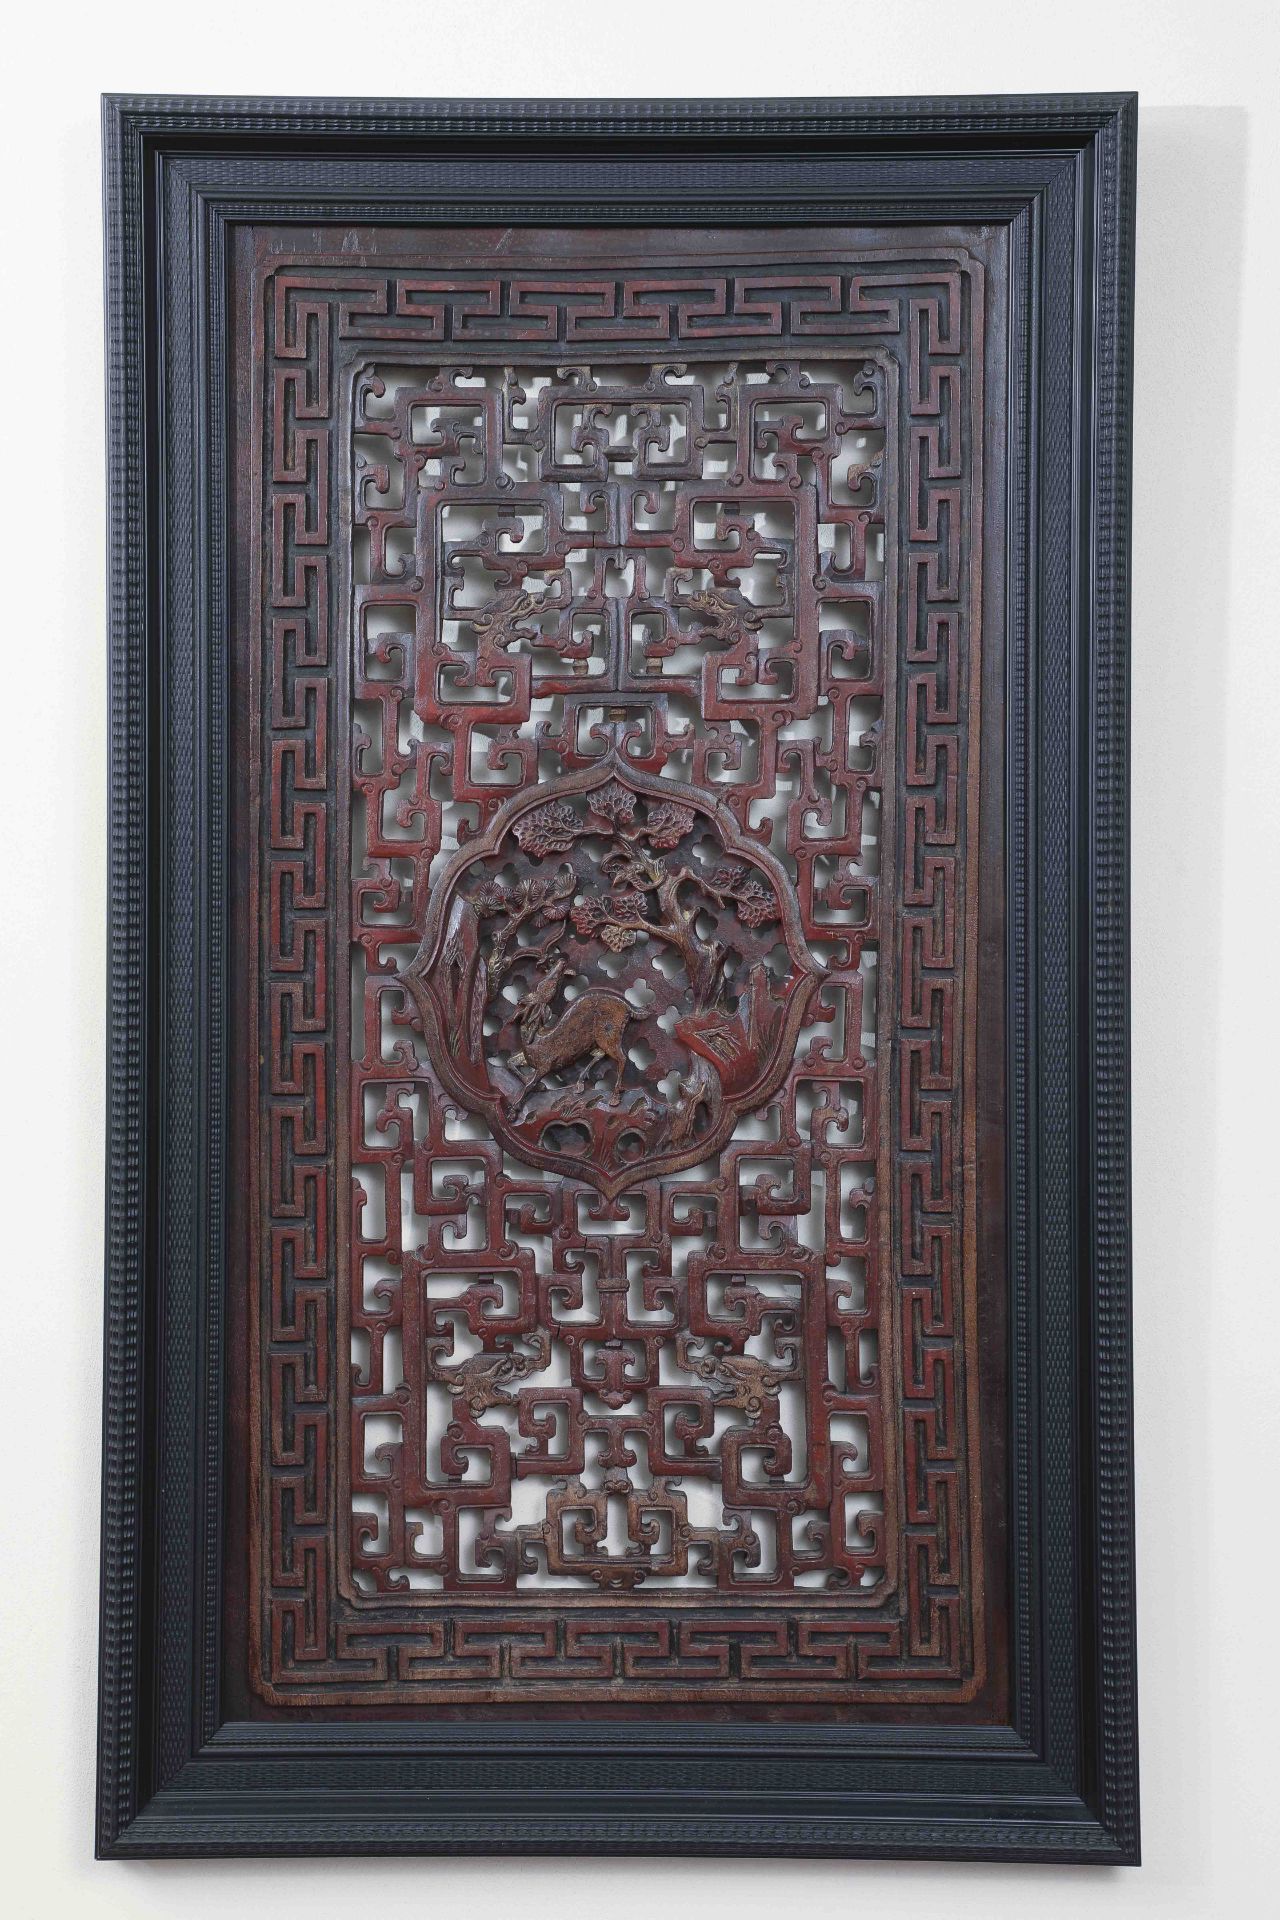 Suite de trois panneaux provenant de l'architecture d'une pagode travaillé en ajour de motifs de